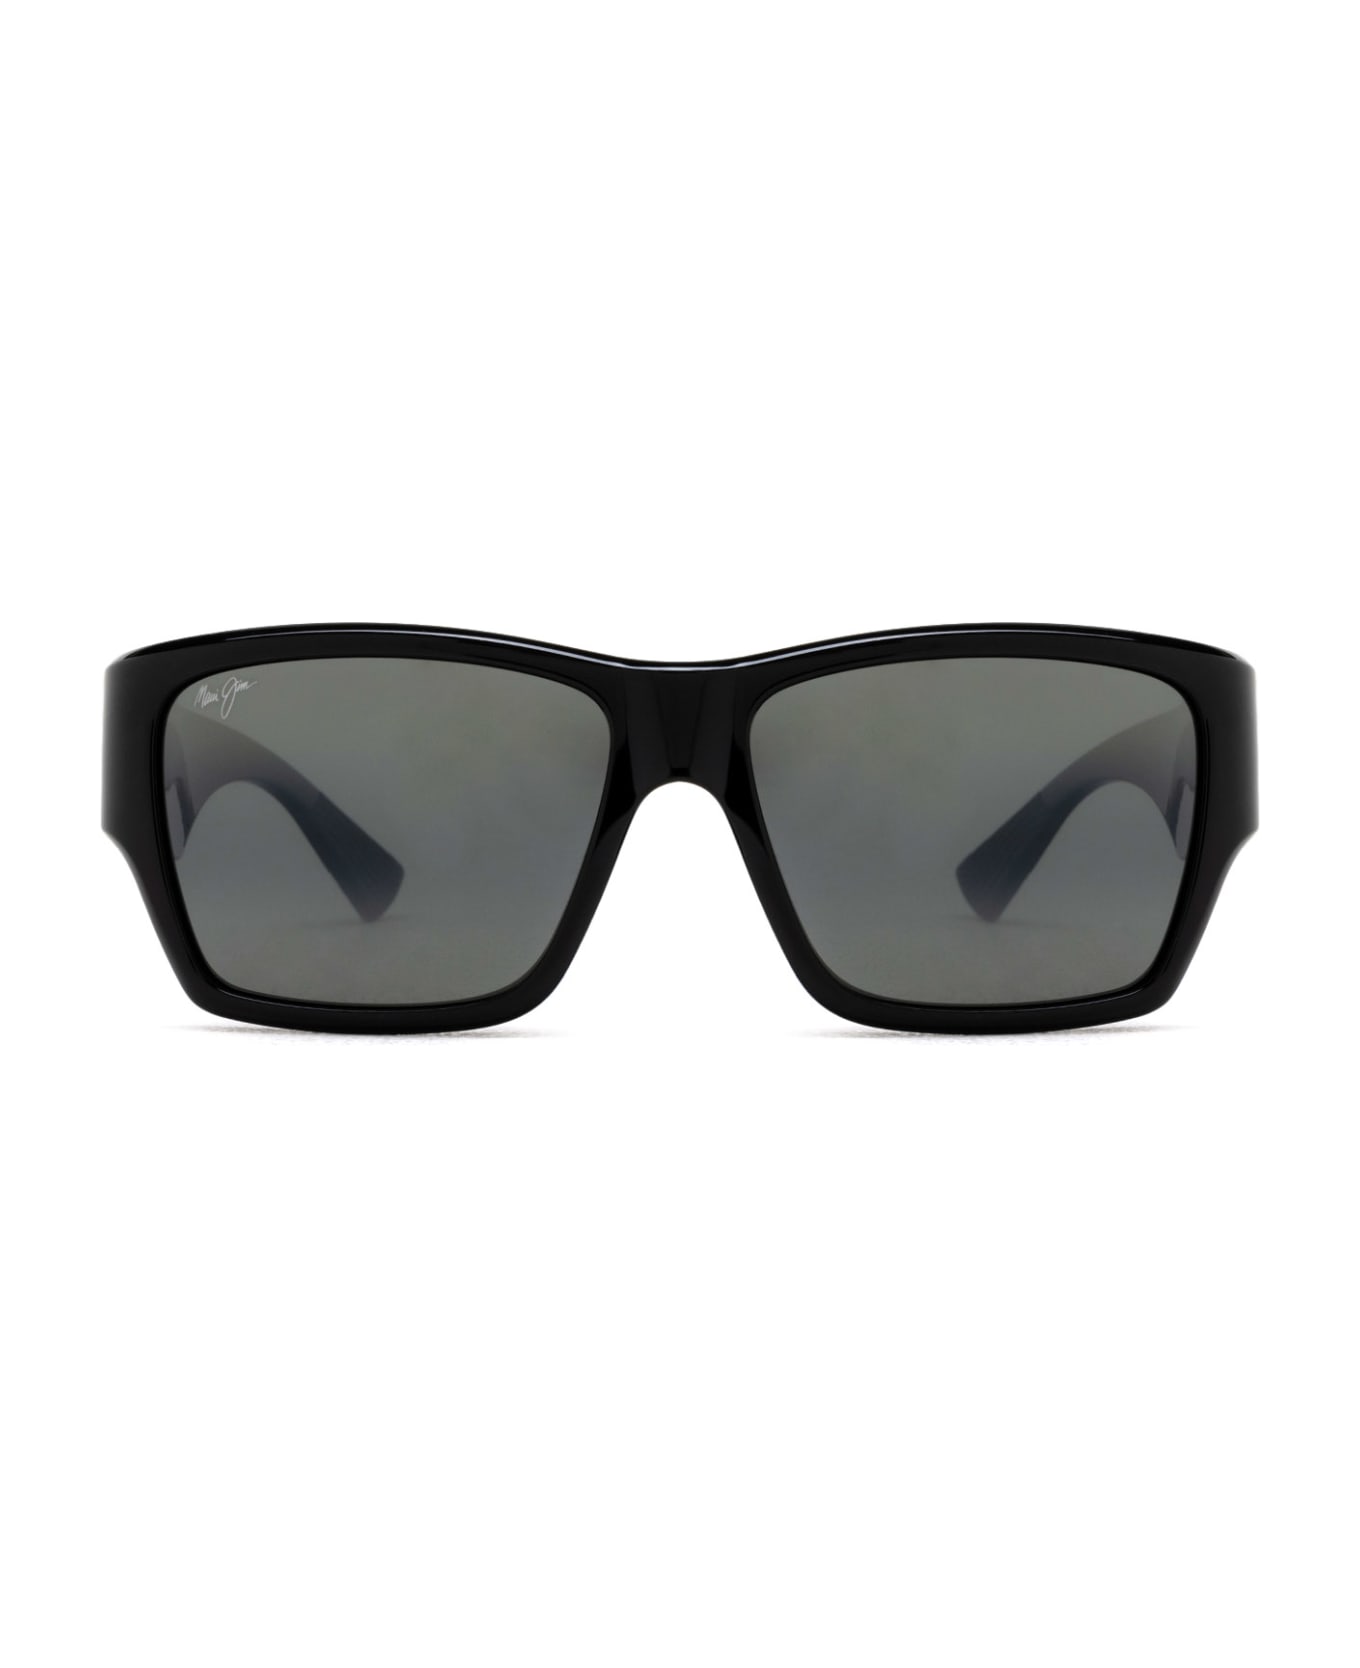 Maui Jim Mj614 Shiny Black Sunglasses - Shiny Black サングラス